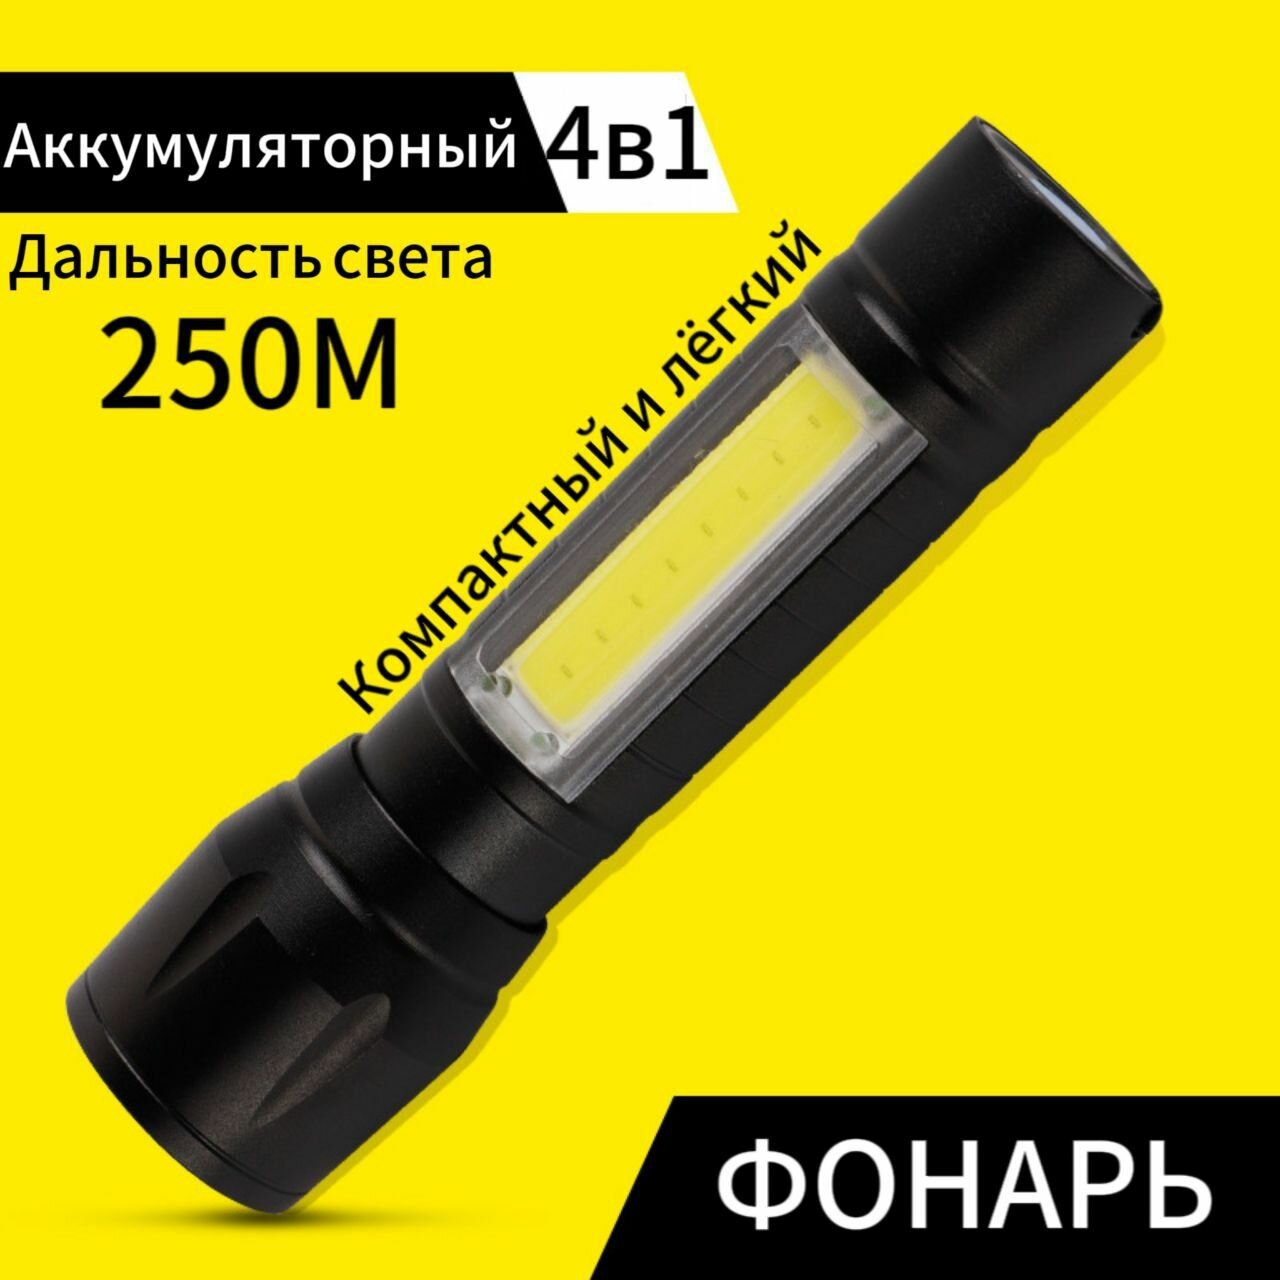 Металлический мощный аккумуляторный мини фонарик ручной 4в1. Светодиодный со стробоскопом, с боковым светильником. Бытовой, туристический.